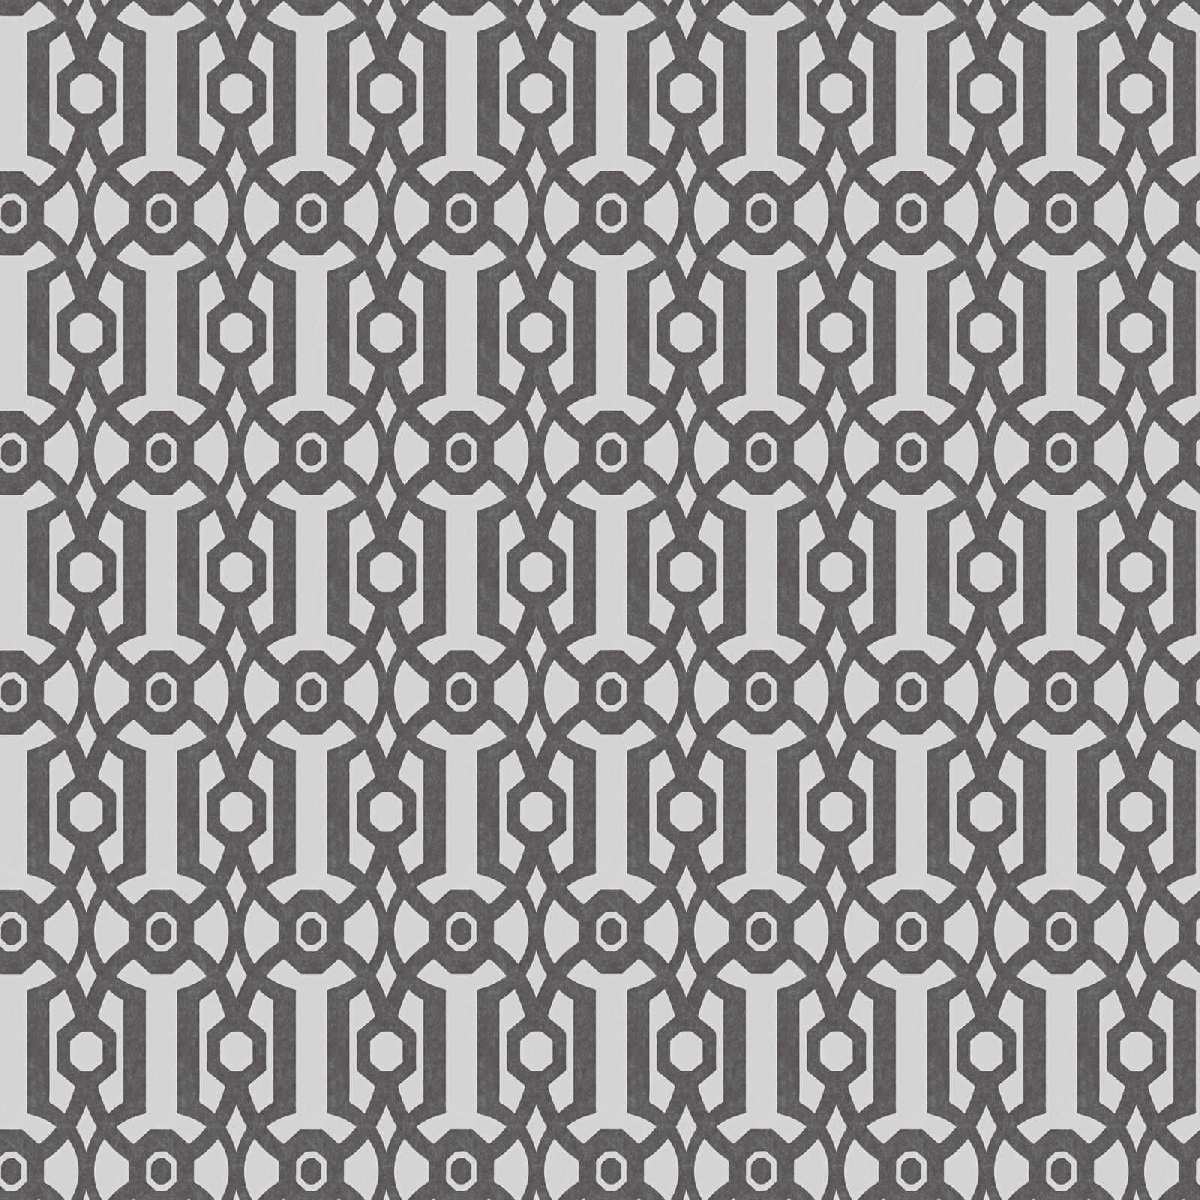 Vliestapete Art of Eden 390624 - Grafiktapete Muster - Schwarz, Weiß